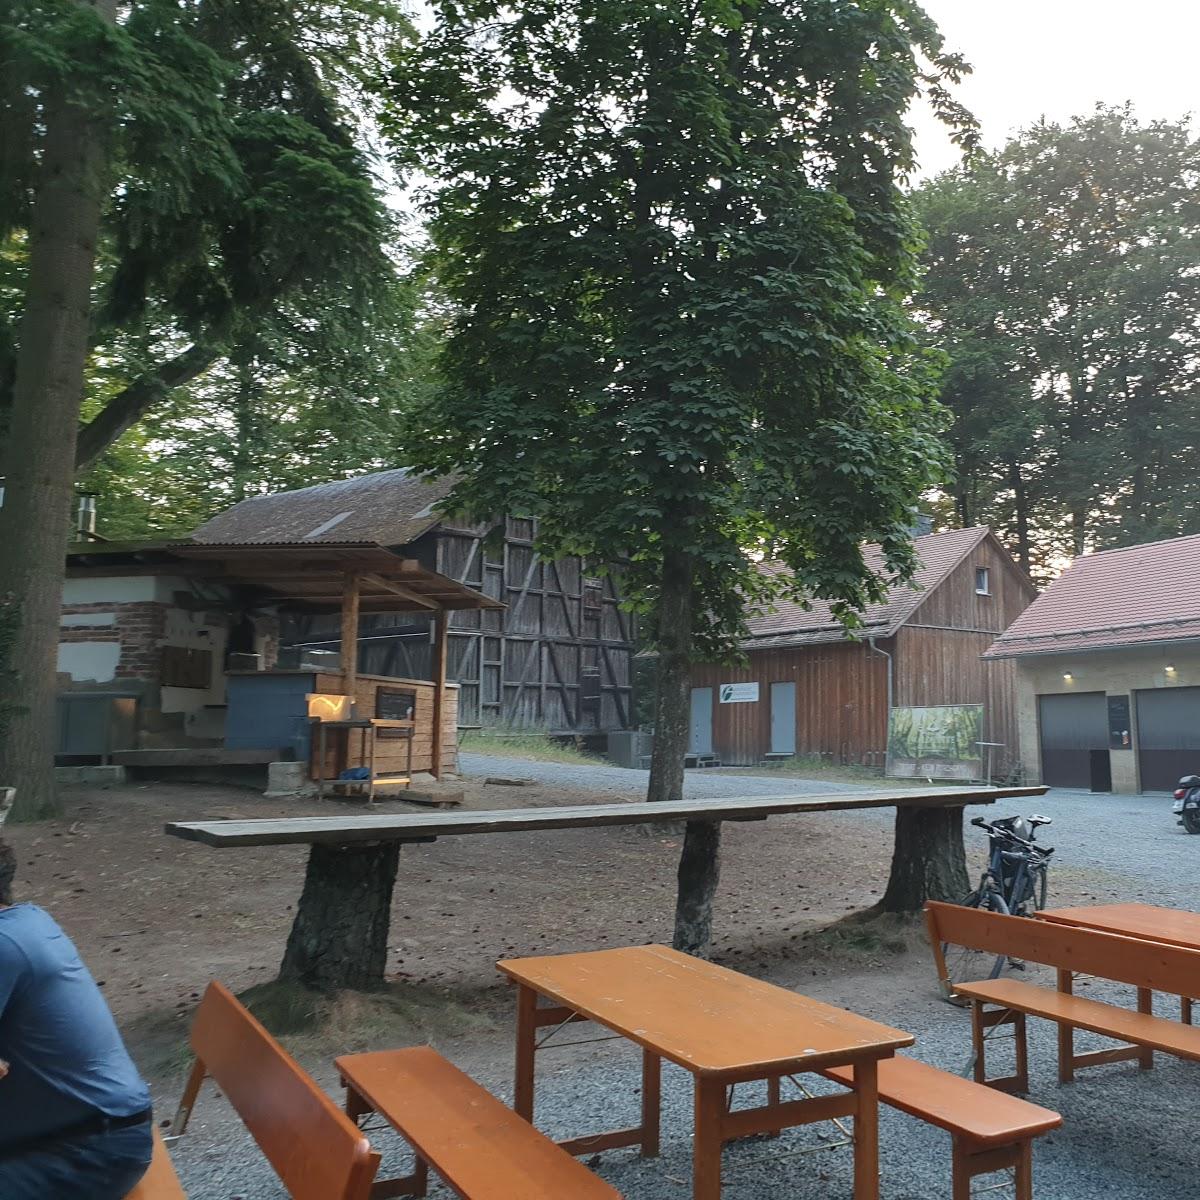 Restaurant "Waldhütte" in  Eckersdorf